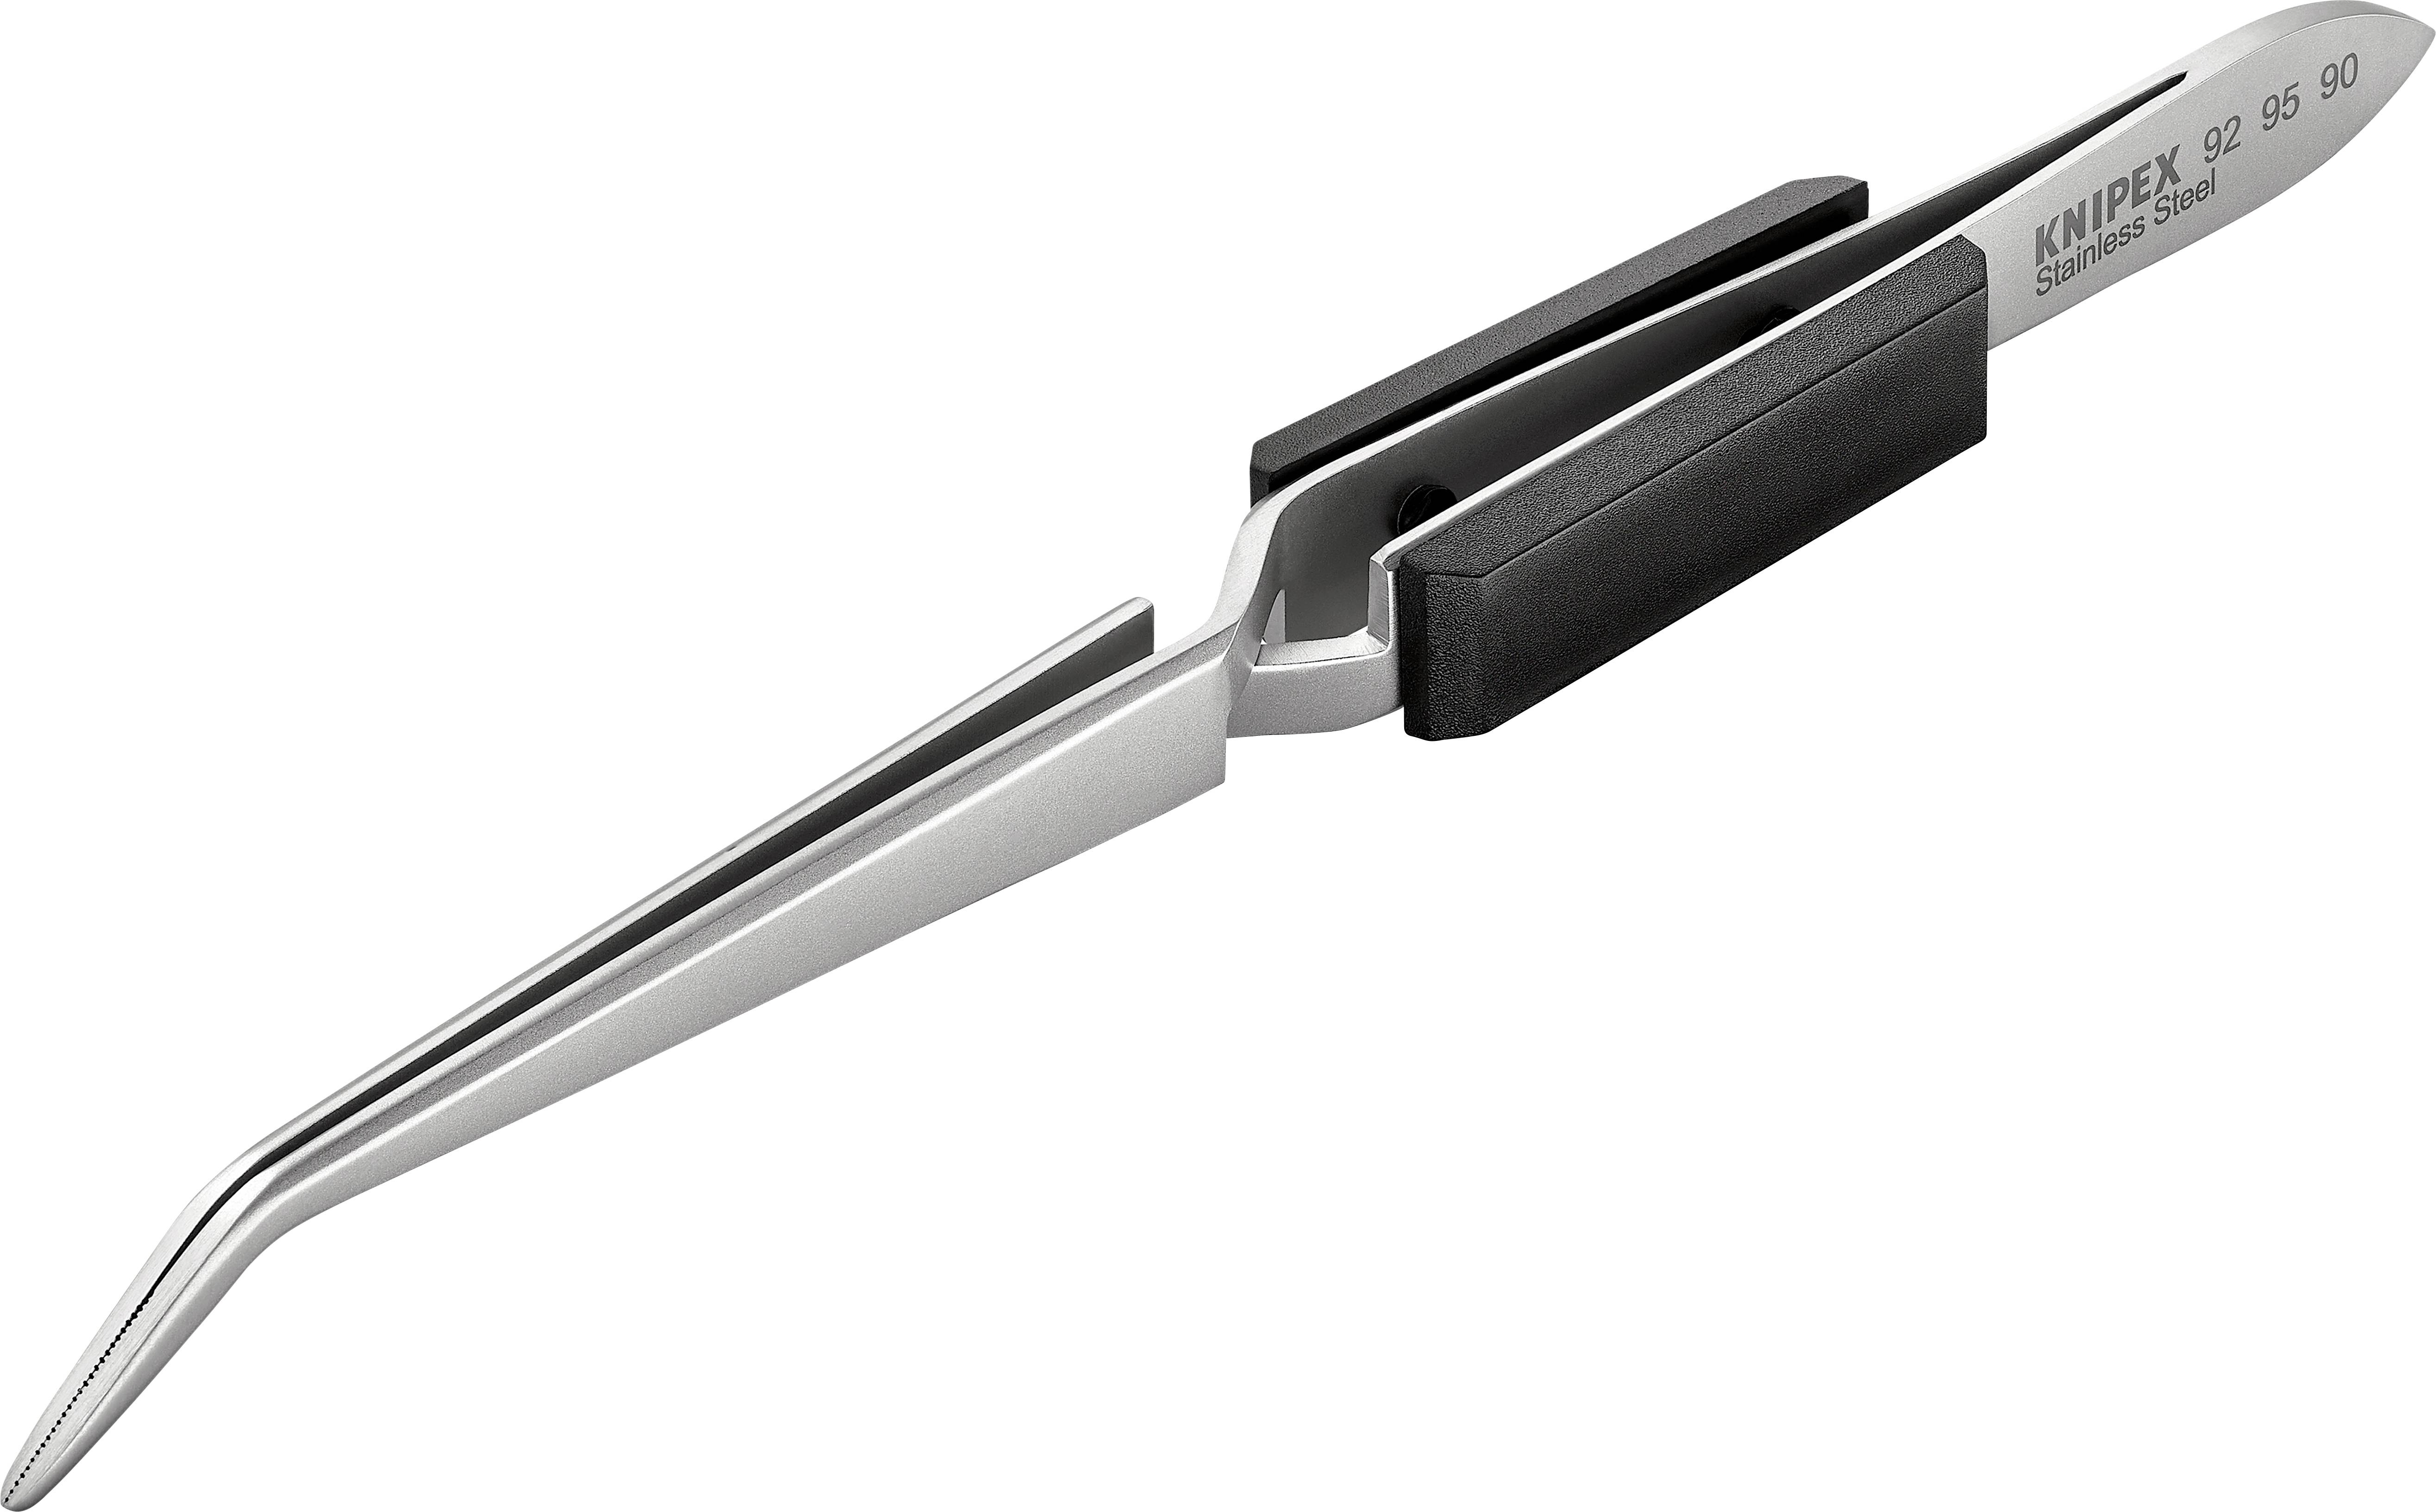 KNIPEX Kreuz-Pinzette Ausführung Abgewinkelt 45°, mit Griffschalen Länge 160 mm 92 95 90 (92 95 90)